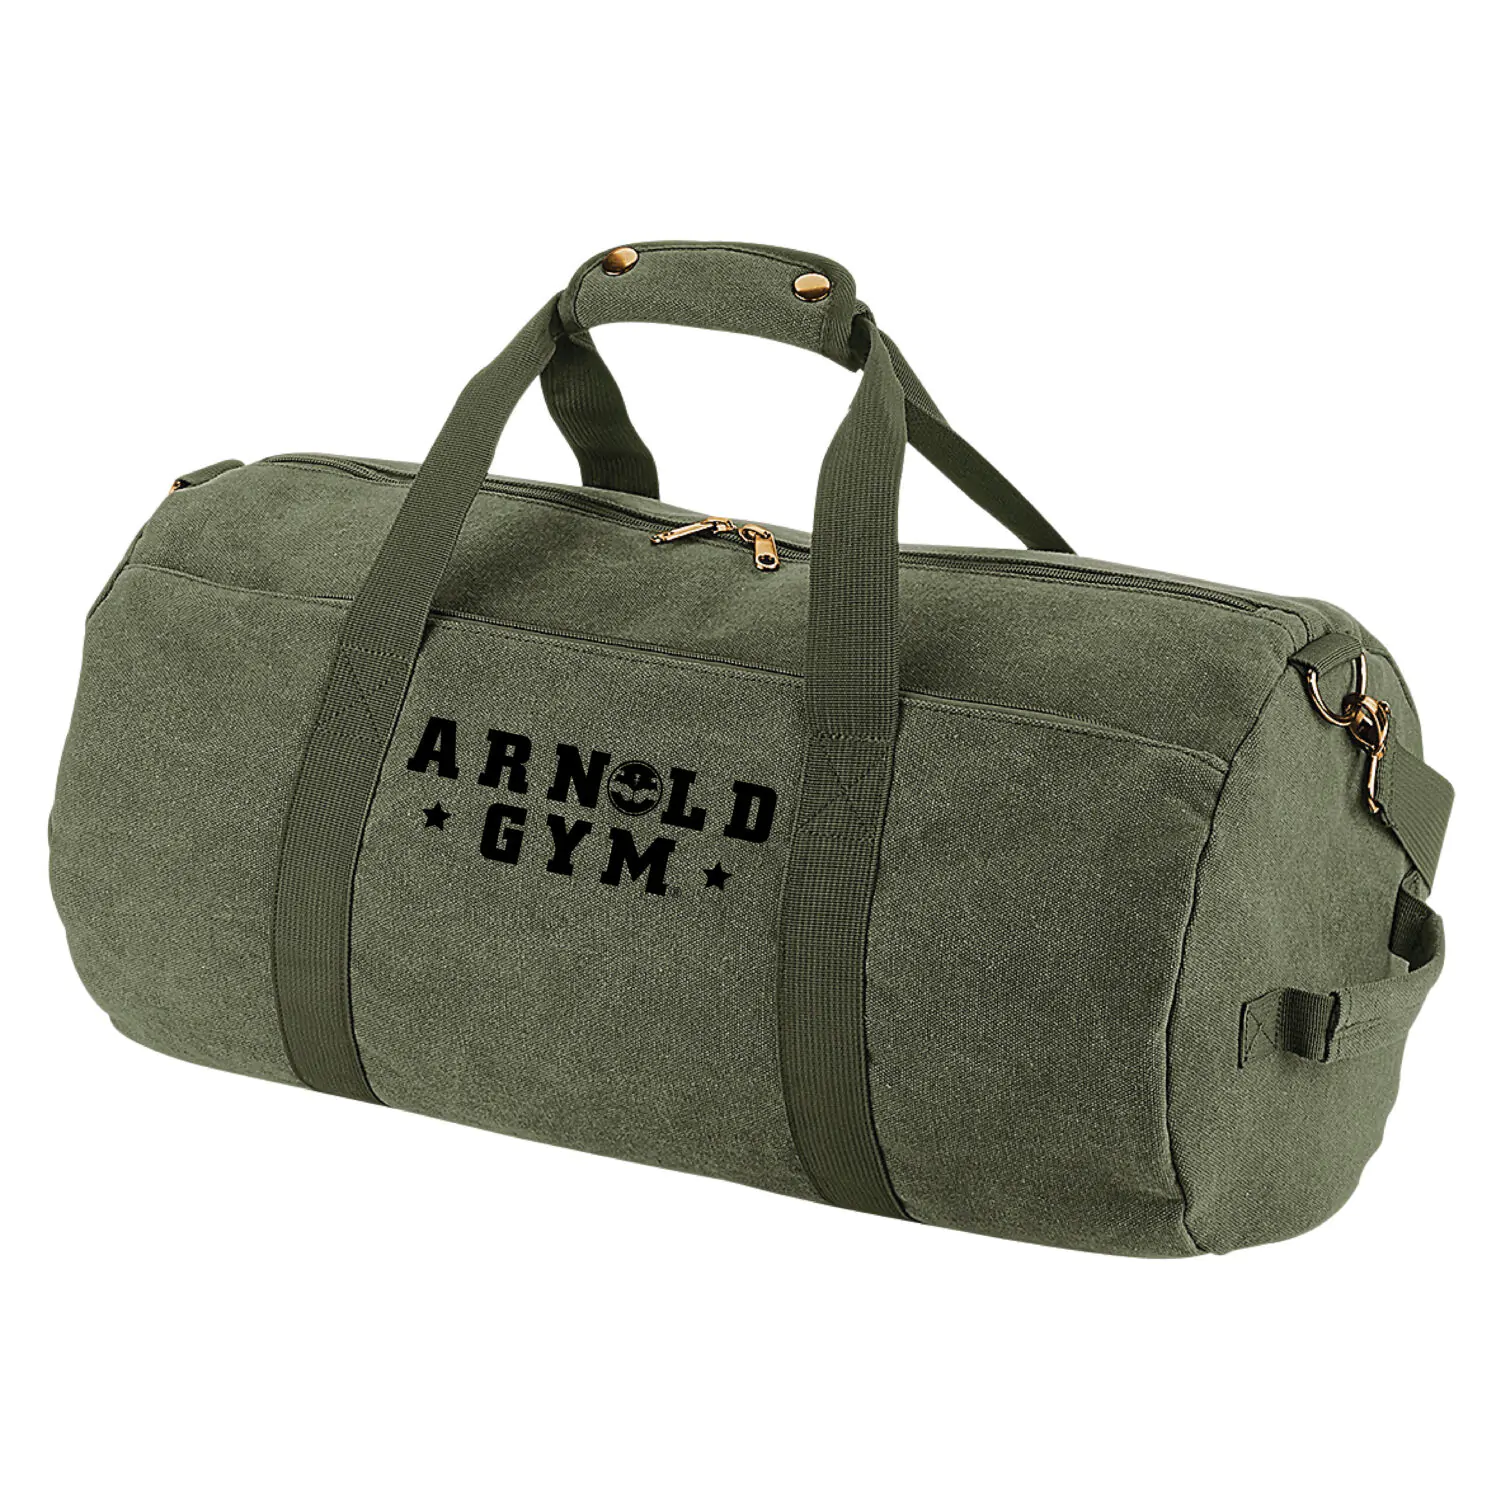 vintage gym barrel bag arnold gym wear green